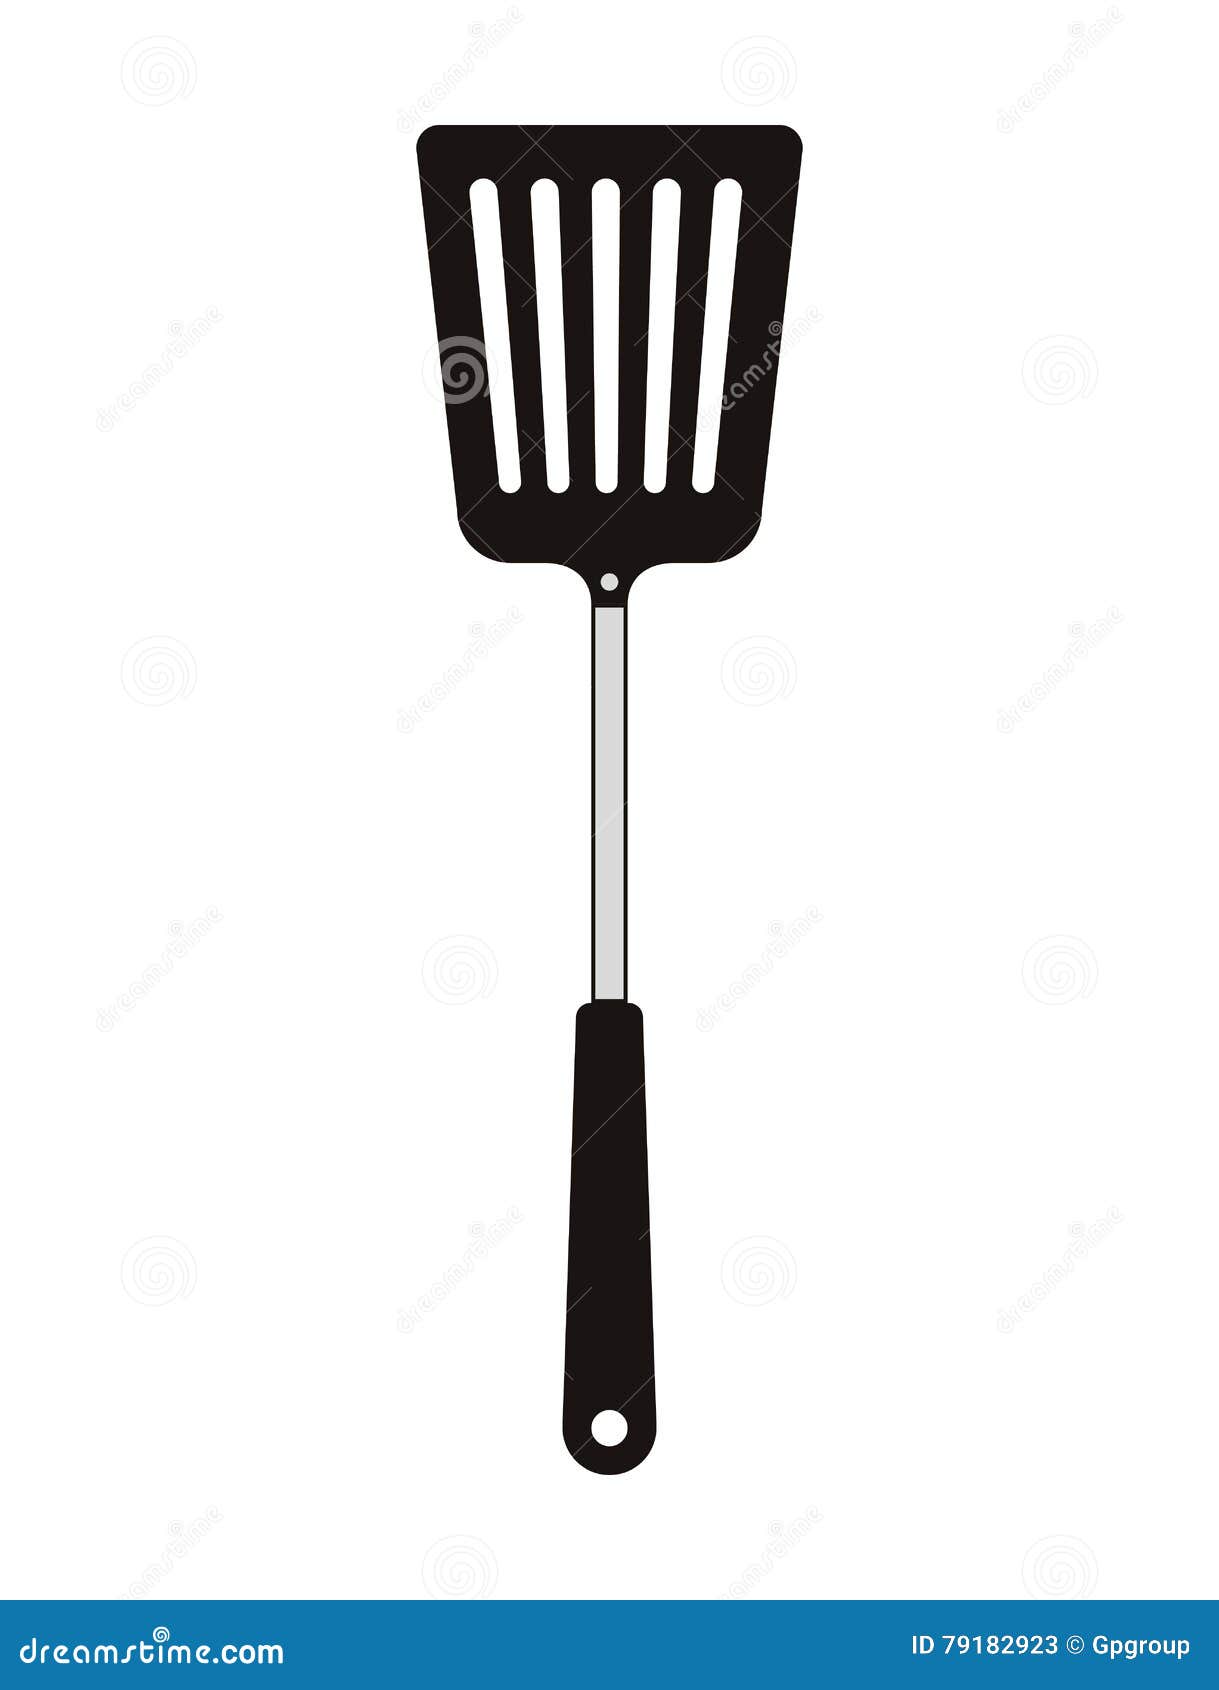 https://thumbs.dreamstime.com/z/bbq-cooking-utensils-turner-grill-utensil-icon-steak-house-food-restaurant-theme-isolated-design-vector-illustration-79182923.jpg